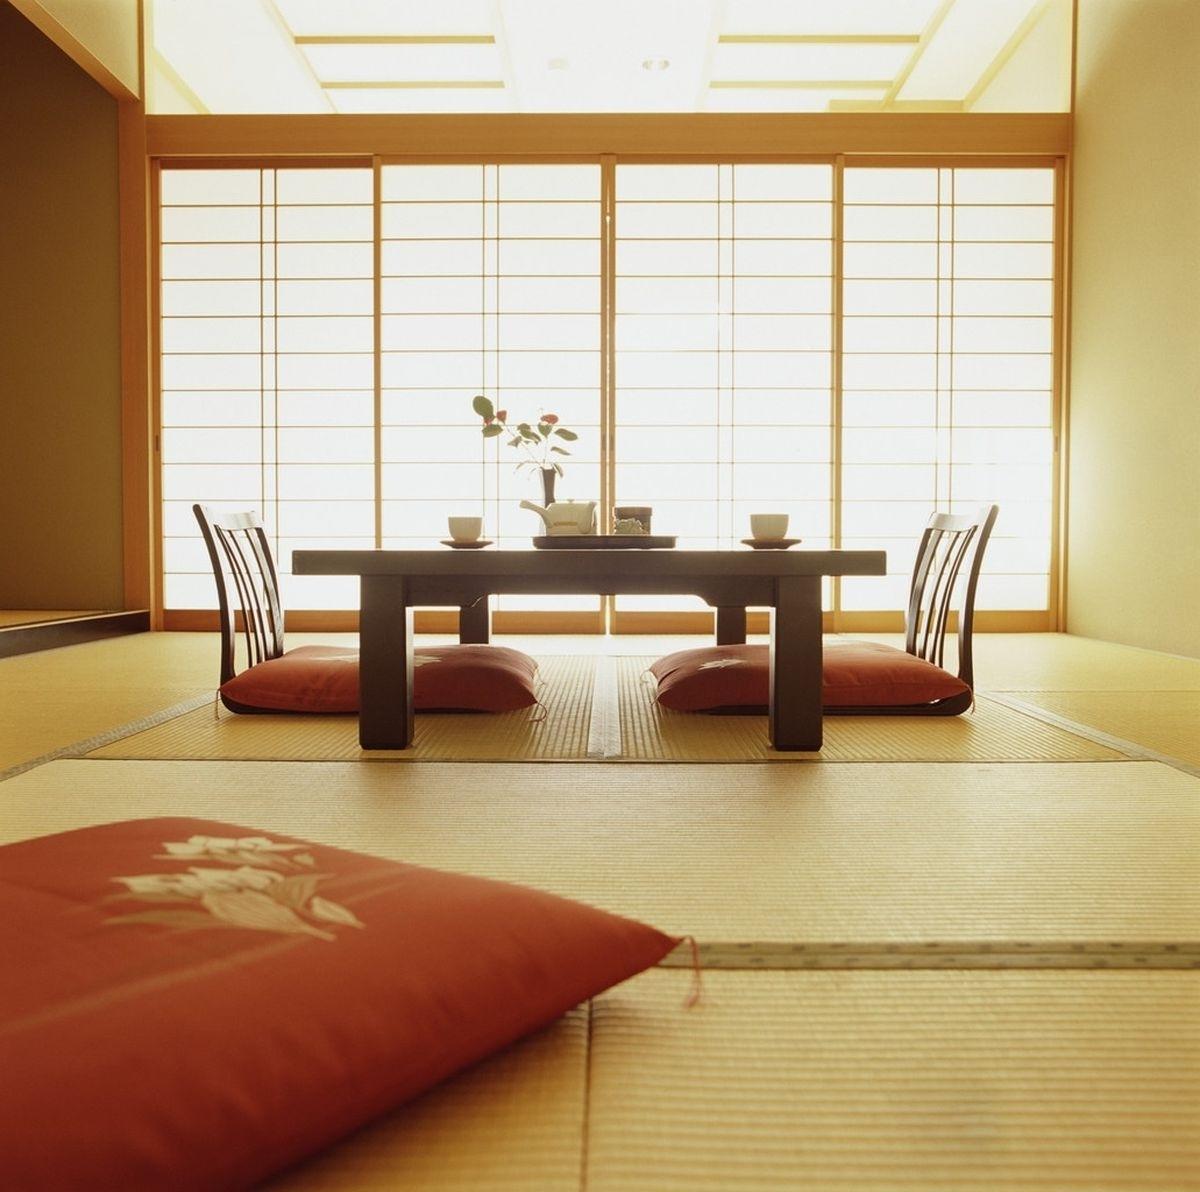 Phòng khách kiểu Nhật
Phòng khách kiểu Nhật là sự kết hợp hoàn hảo giữa vẻ đẹp tự nhiên và nghệ thuật kiến trúc. Với các thiết kế tinh tế, đơn giản và thanh lịch, phòng khách kiểu Nhật sẽ mang đến sự an nhiên, thư giãn và tạo nên không gian sống đầy tinh thần nghệ thuật. Khám phá ngay những mẫu phòng khách kiểu Nhật đẹp đến không ngờ.